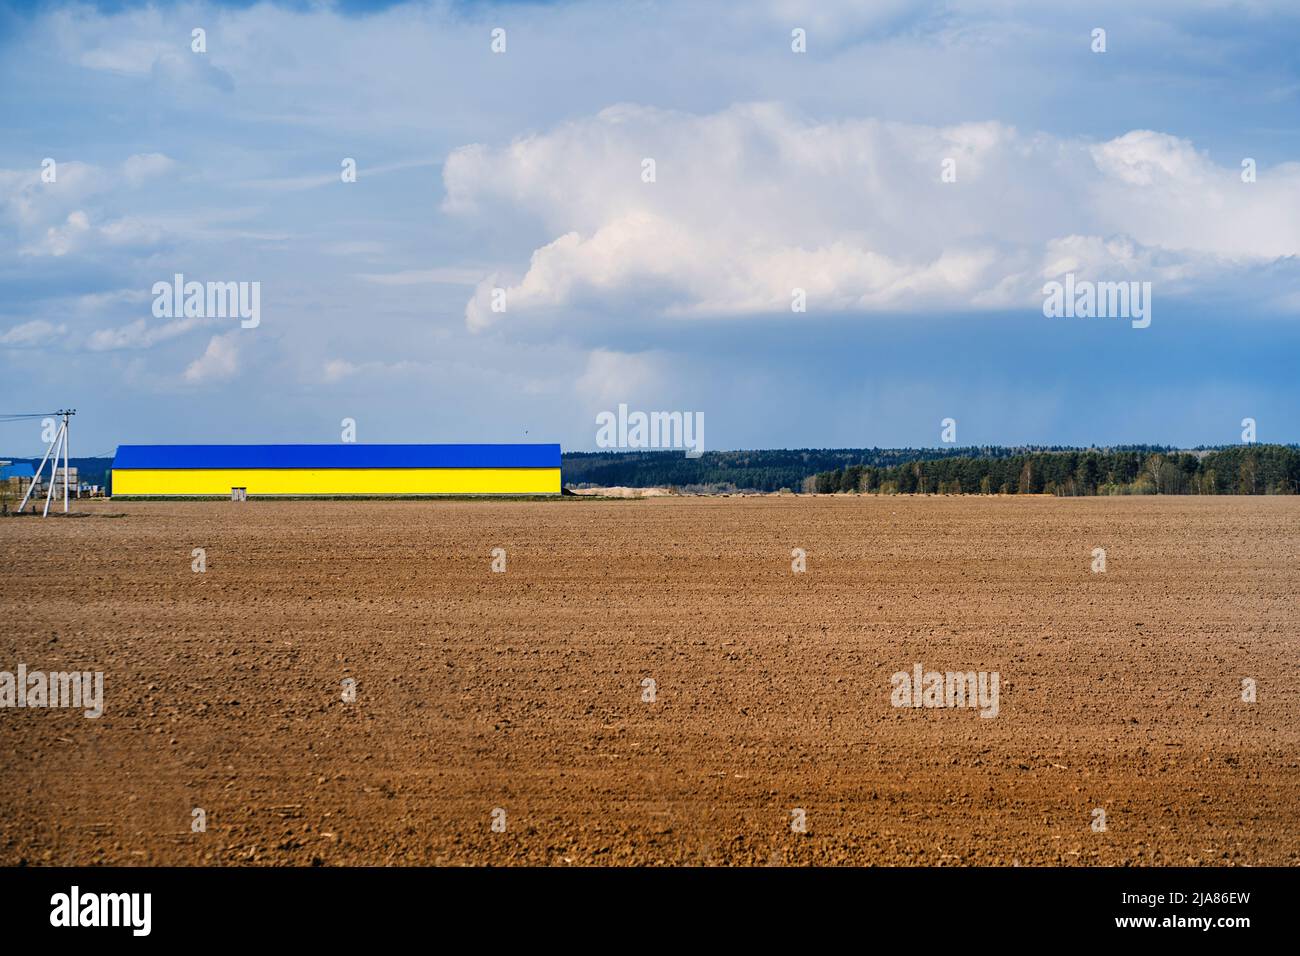 Auf Ackerland Feld ein großer Hangar von gelbblauer Farbe Stockfoto